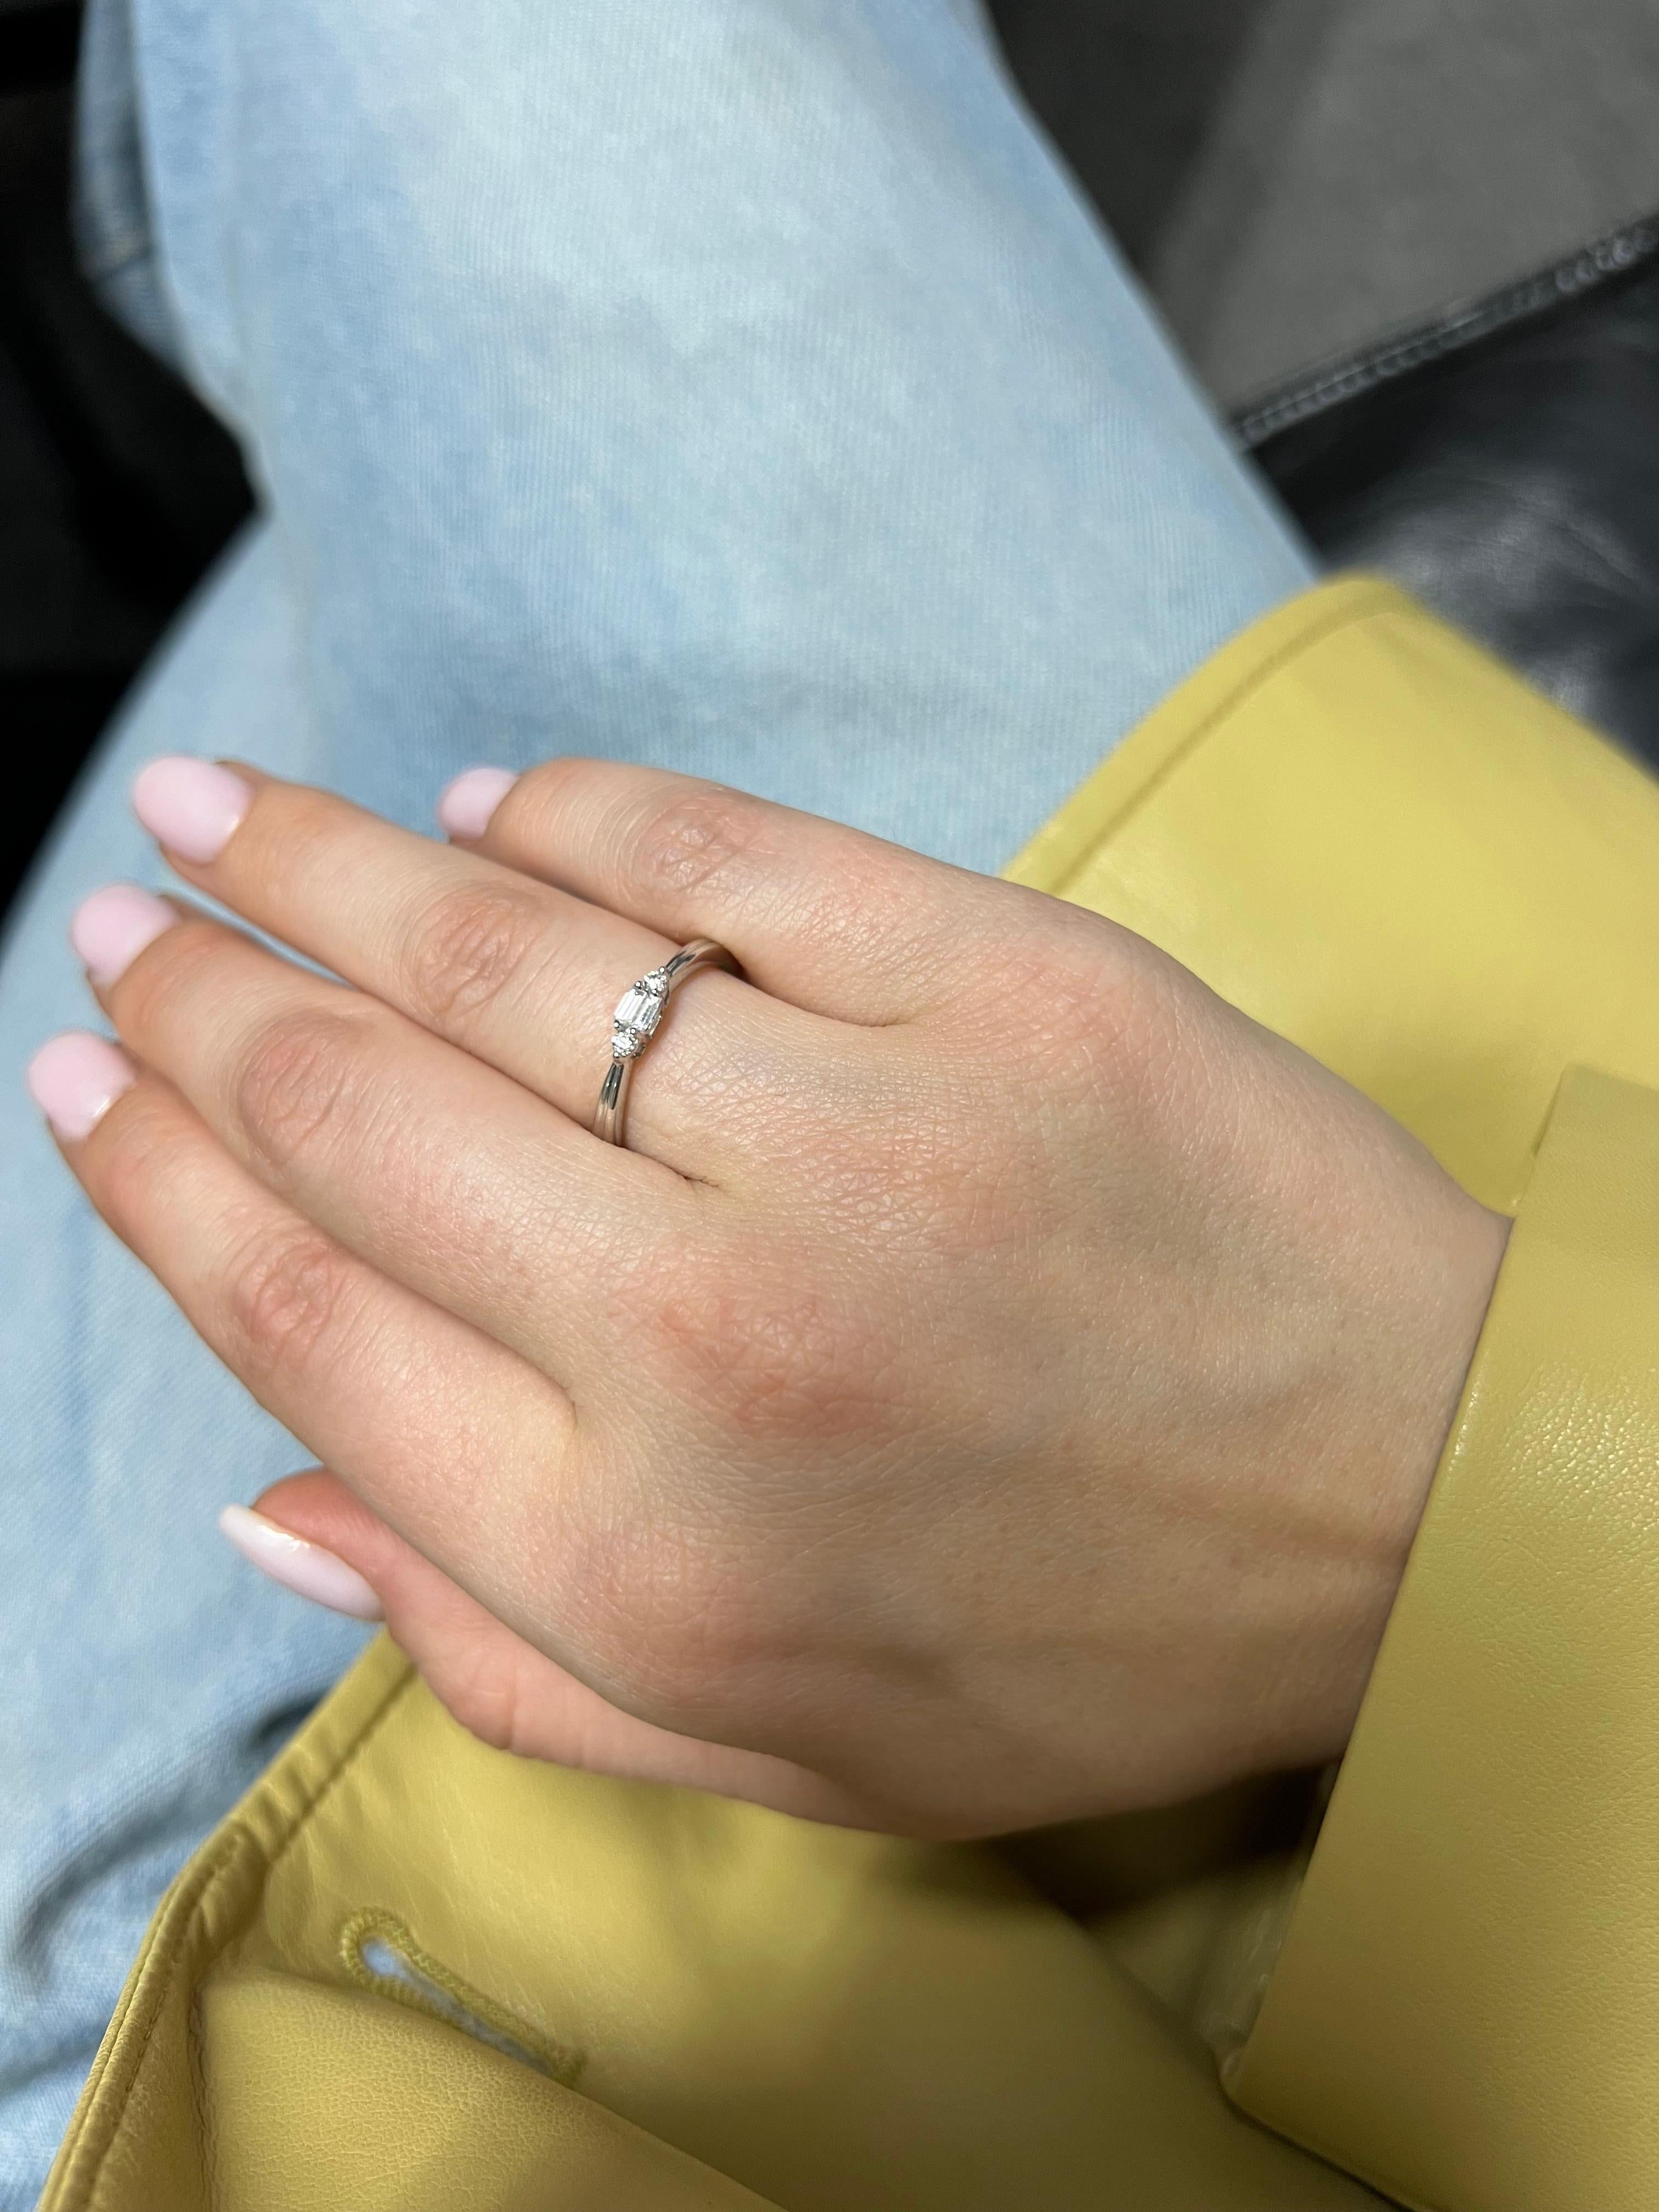 Das Herzstück des Rings ist ein atemberaubender Baguette-Diamant, der einen eleganten und modernen Charme ausstrahlt. Der Baguette-Diamant mit seiner länglichen Form und seiner makellosen Reinheit bildet den Mittelpunkt des Rings und strahlt eine